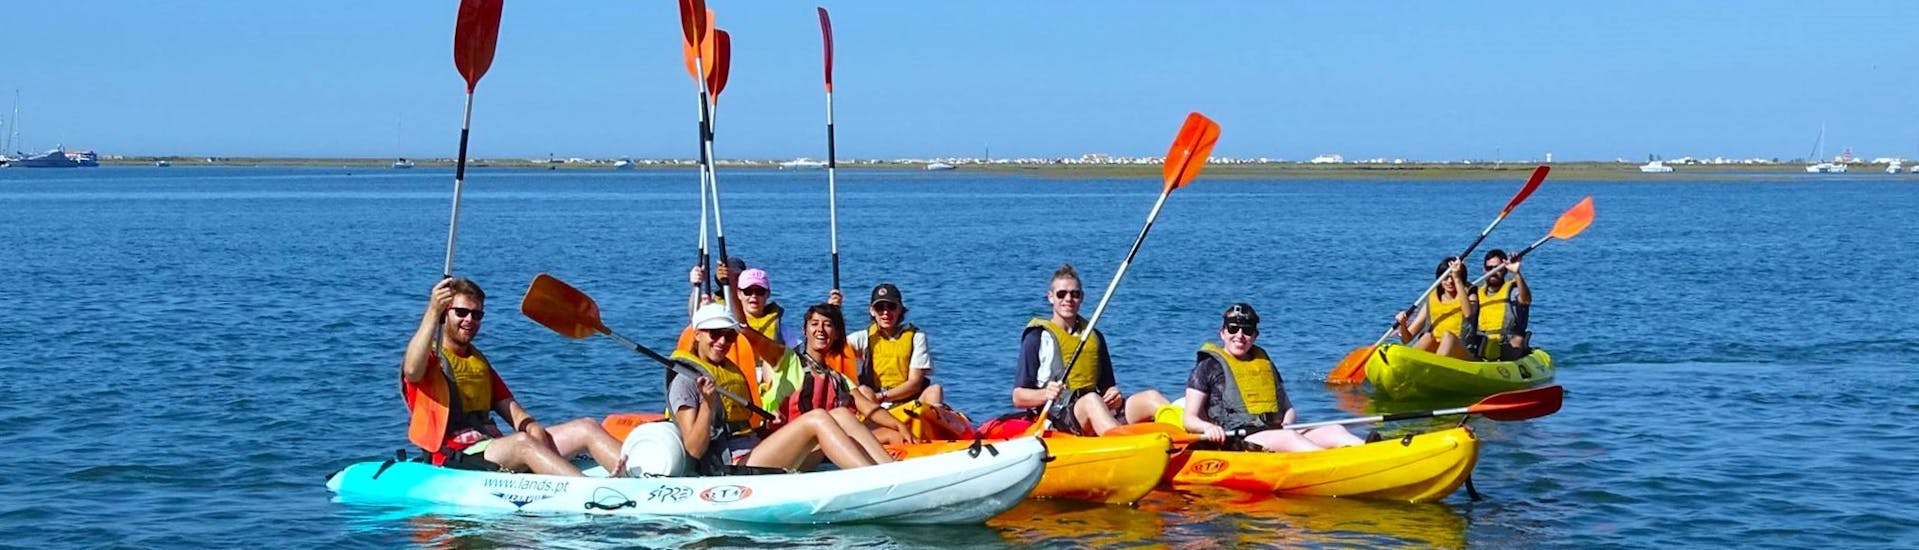 Un gruppo di partecipanti pagaiando lungo la Ria Formosa in una giornata di sole durante un tour in kayak da Faro con Lands Algarve.